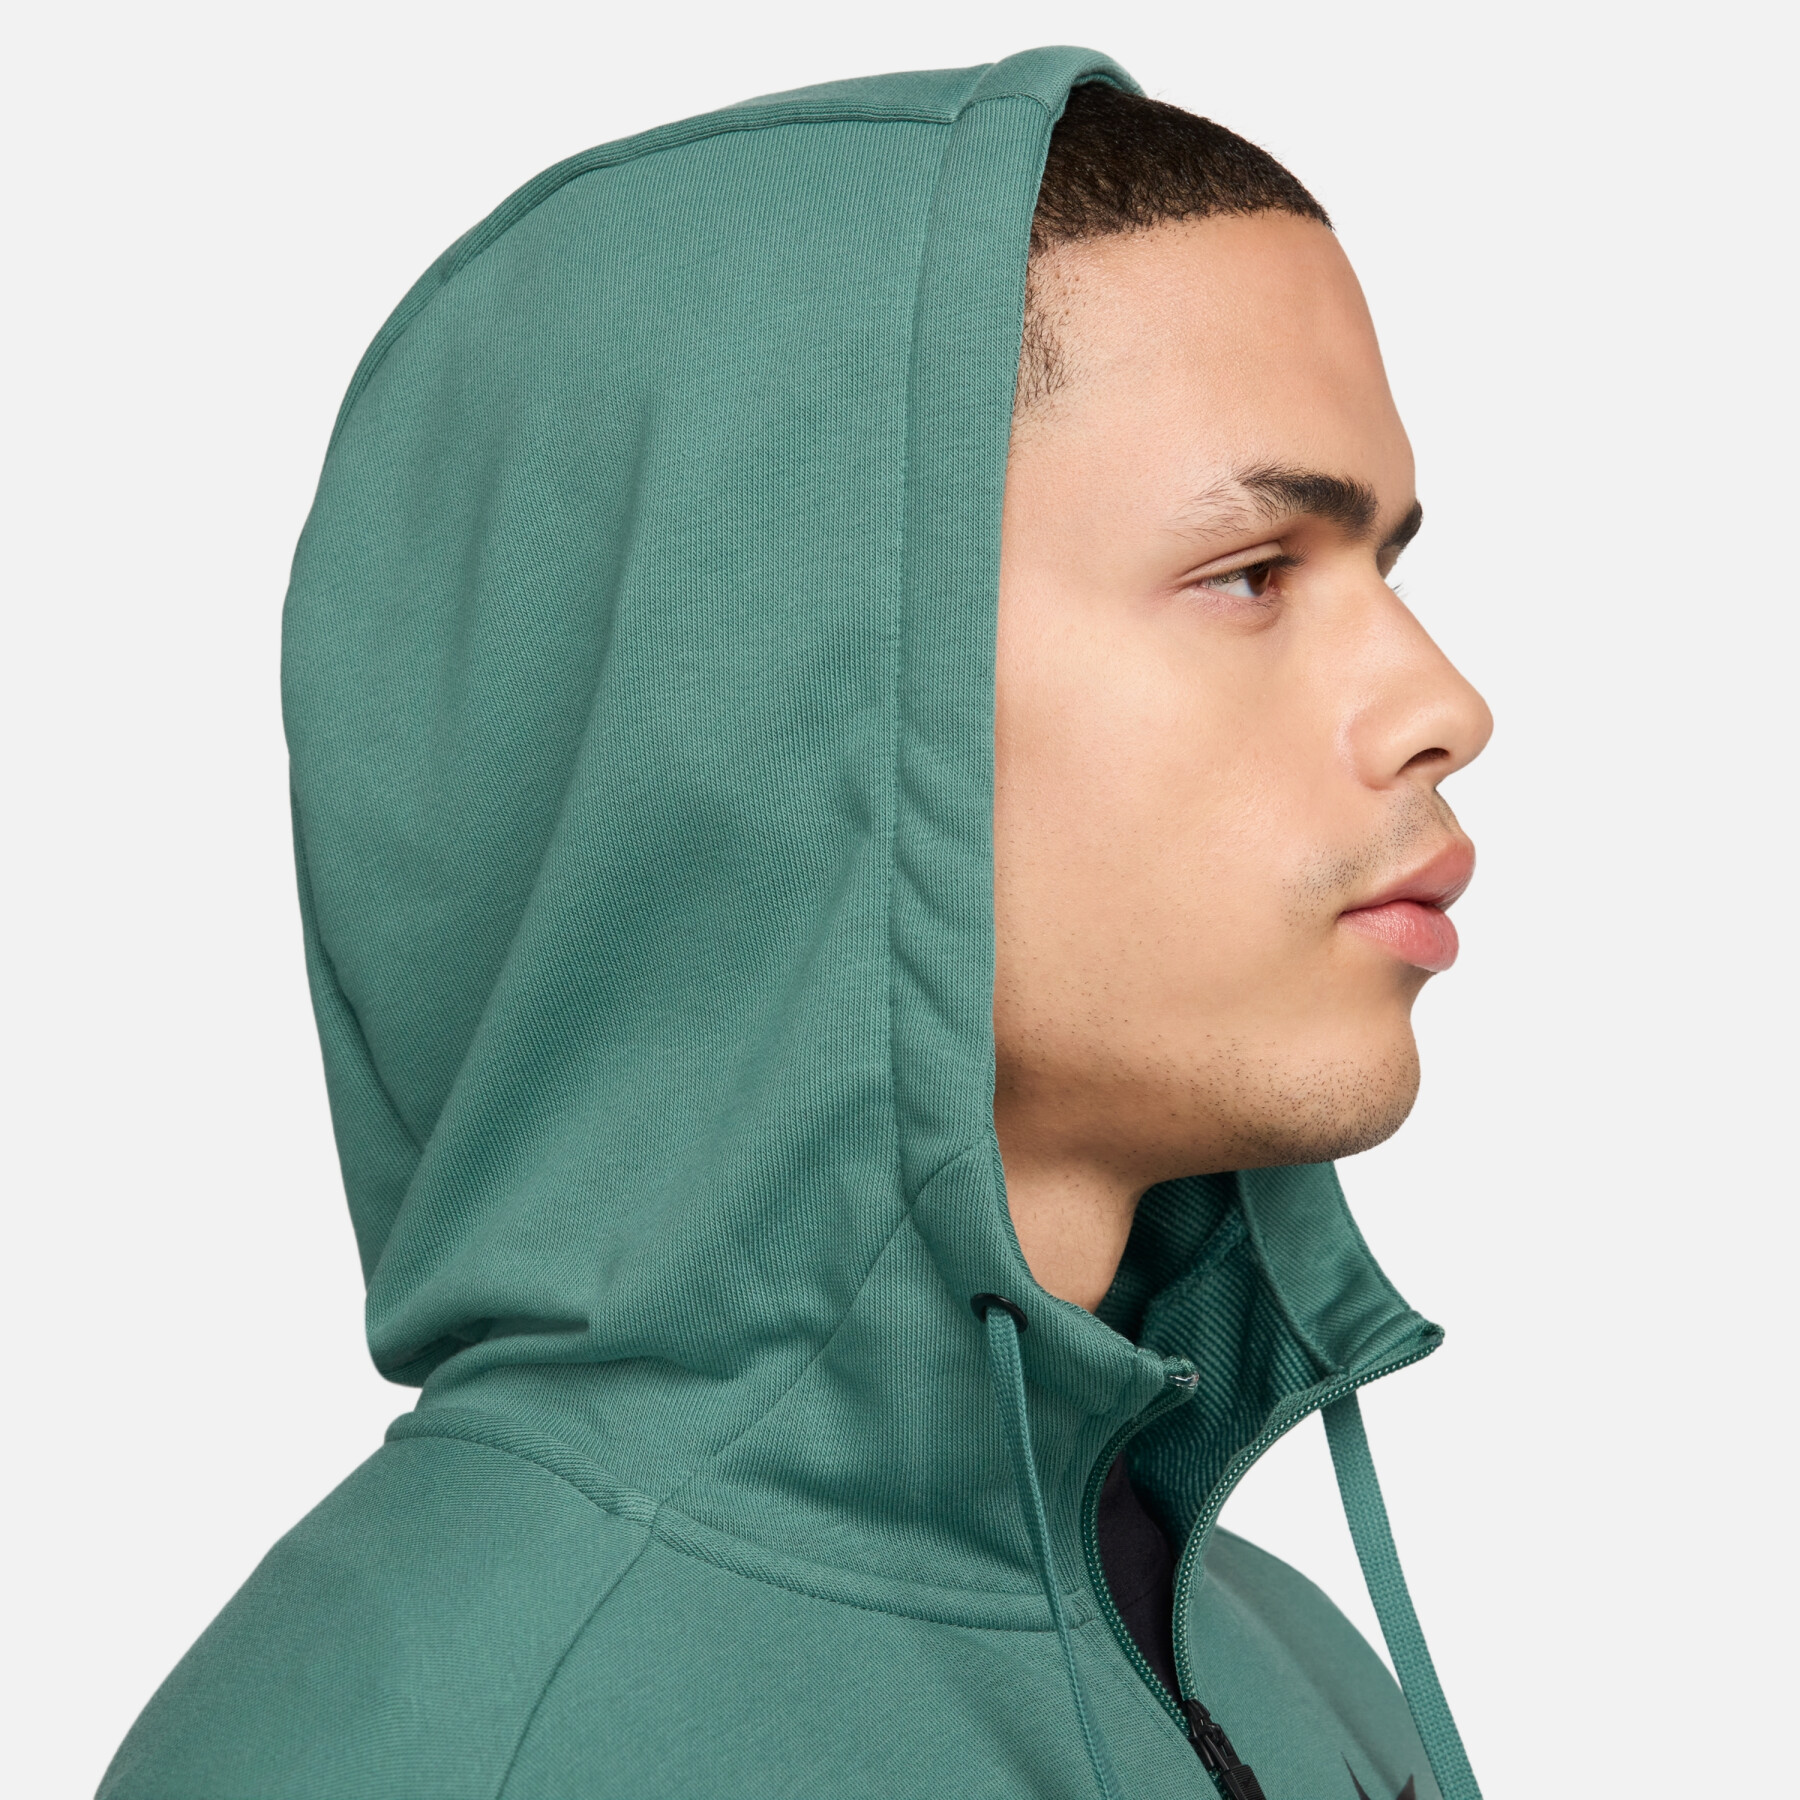 Hooded sweatshirt met rits Nike Dri-FIT